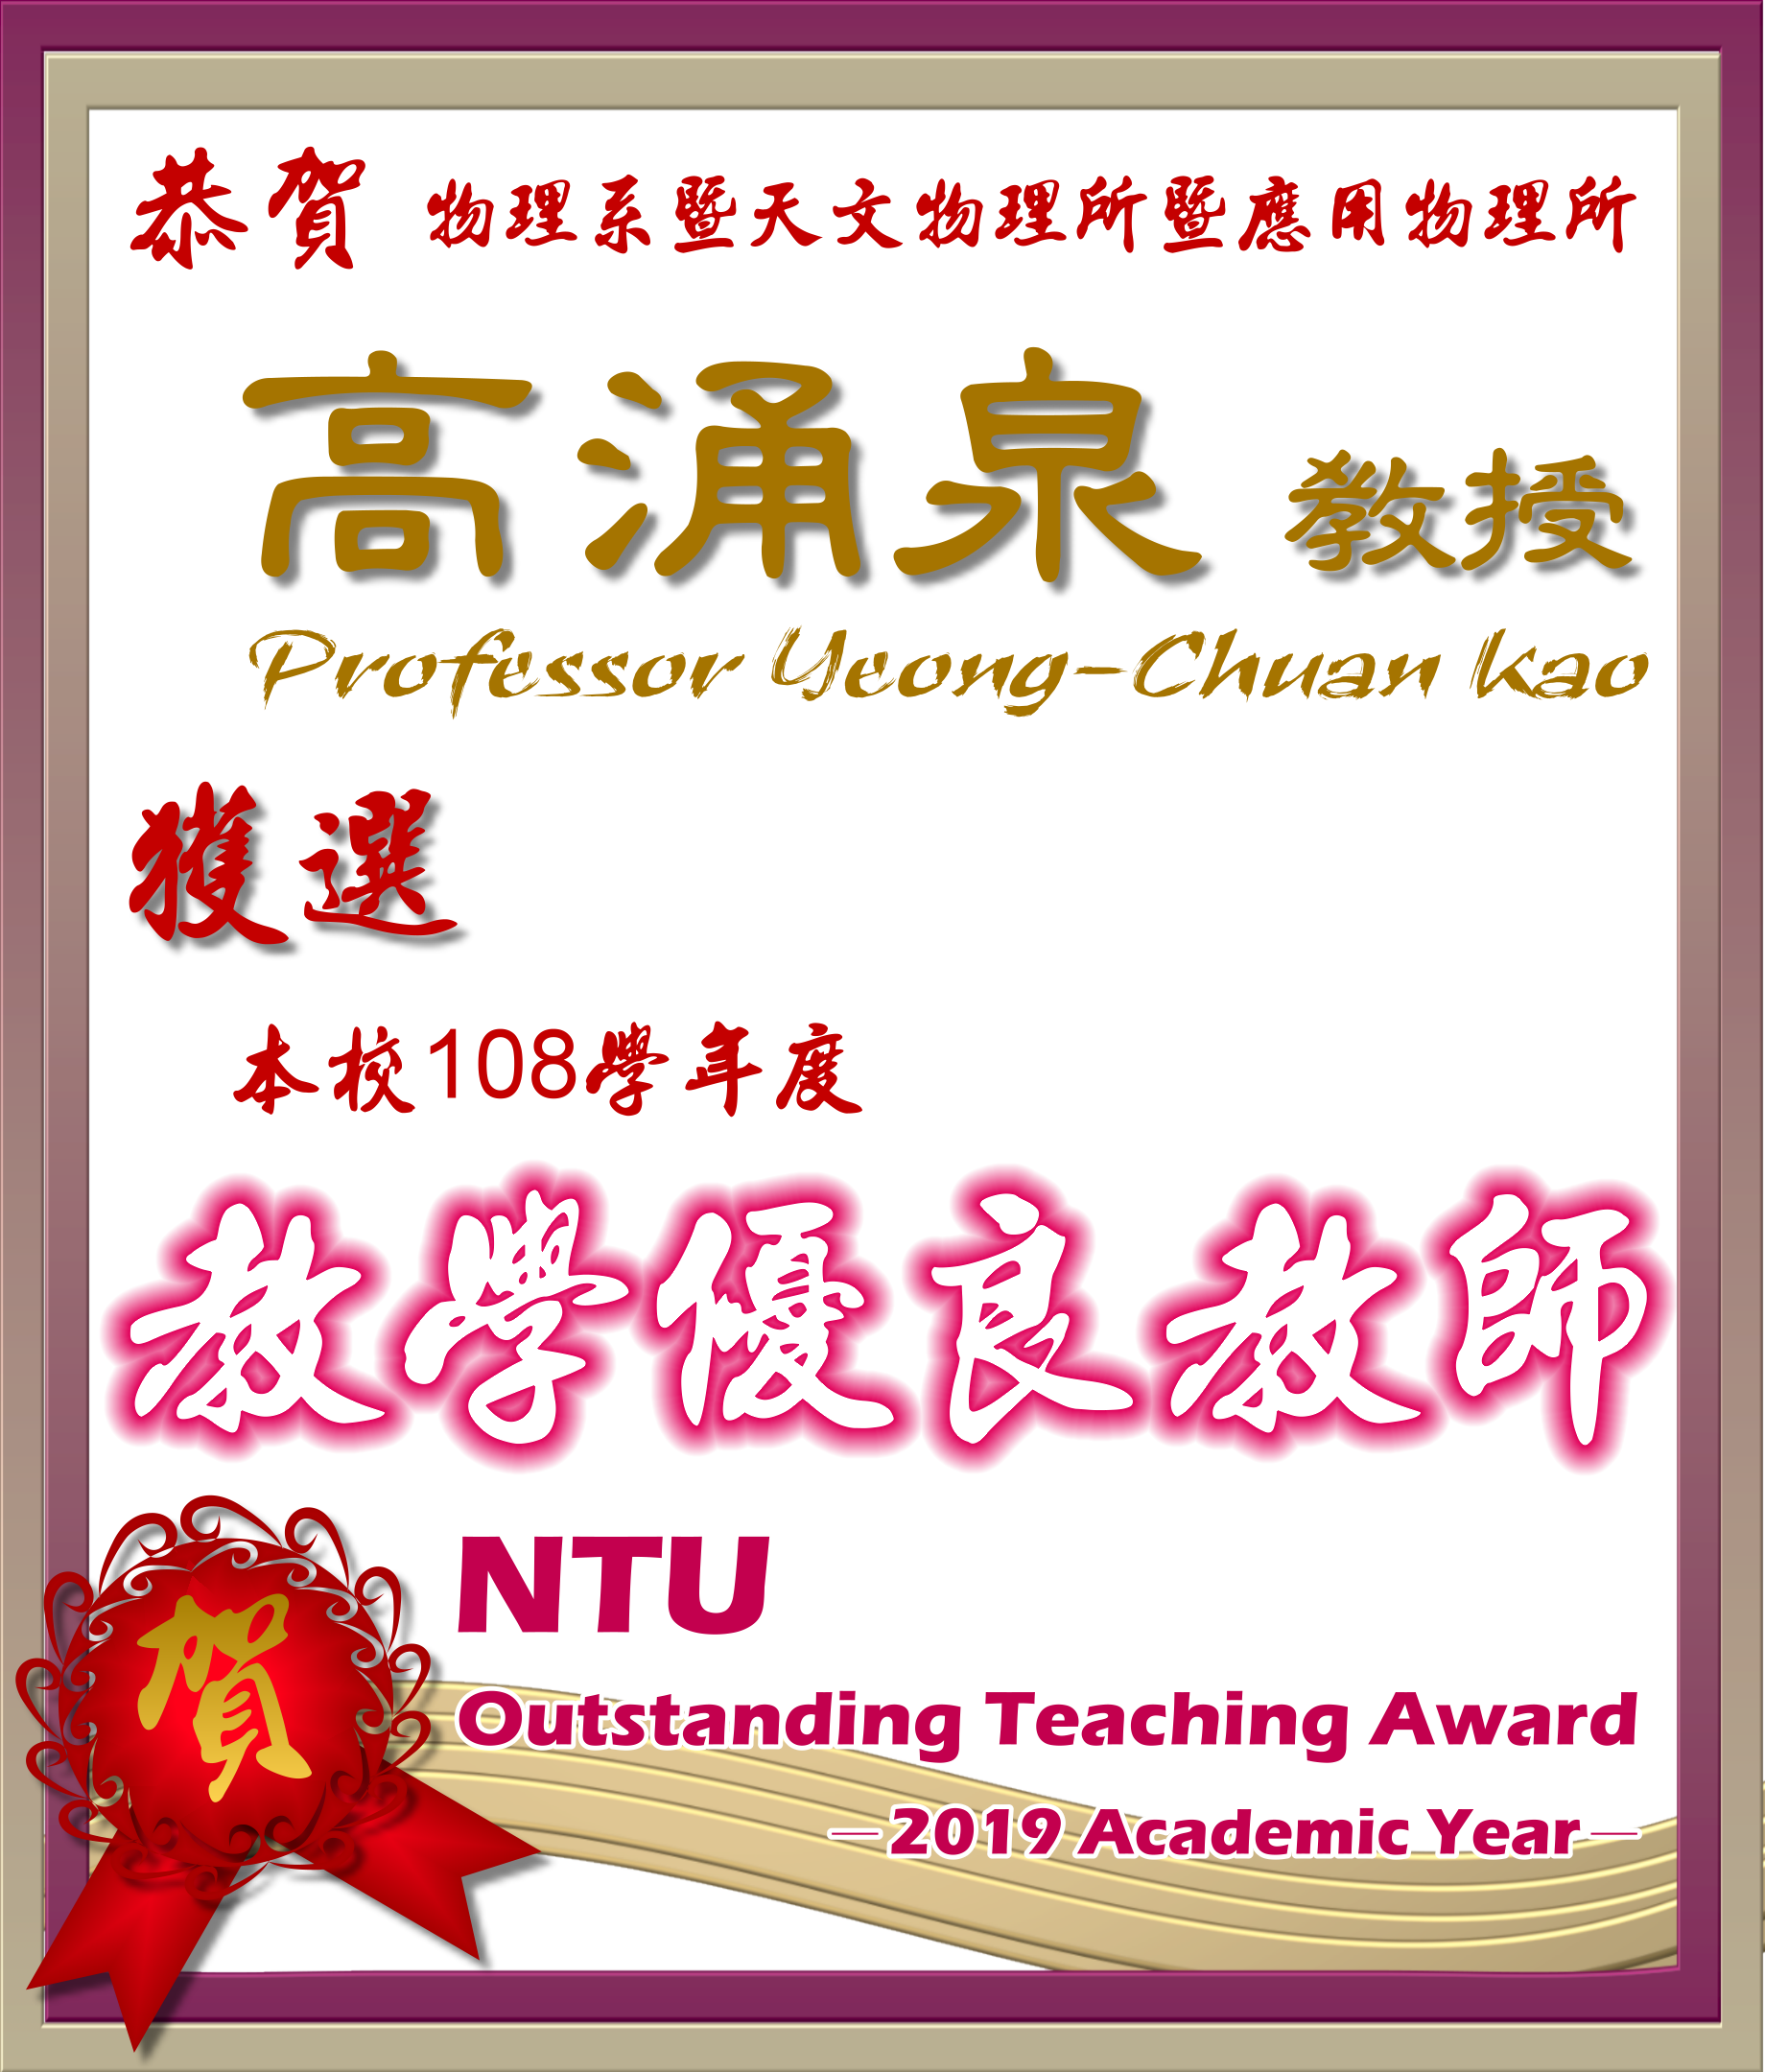 《賀》本系 高涌泉 教授獲選 108學年度《教學優良教師》(NTU Outstanding Teaching Award)